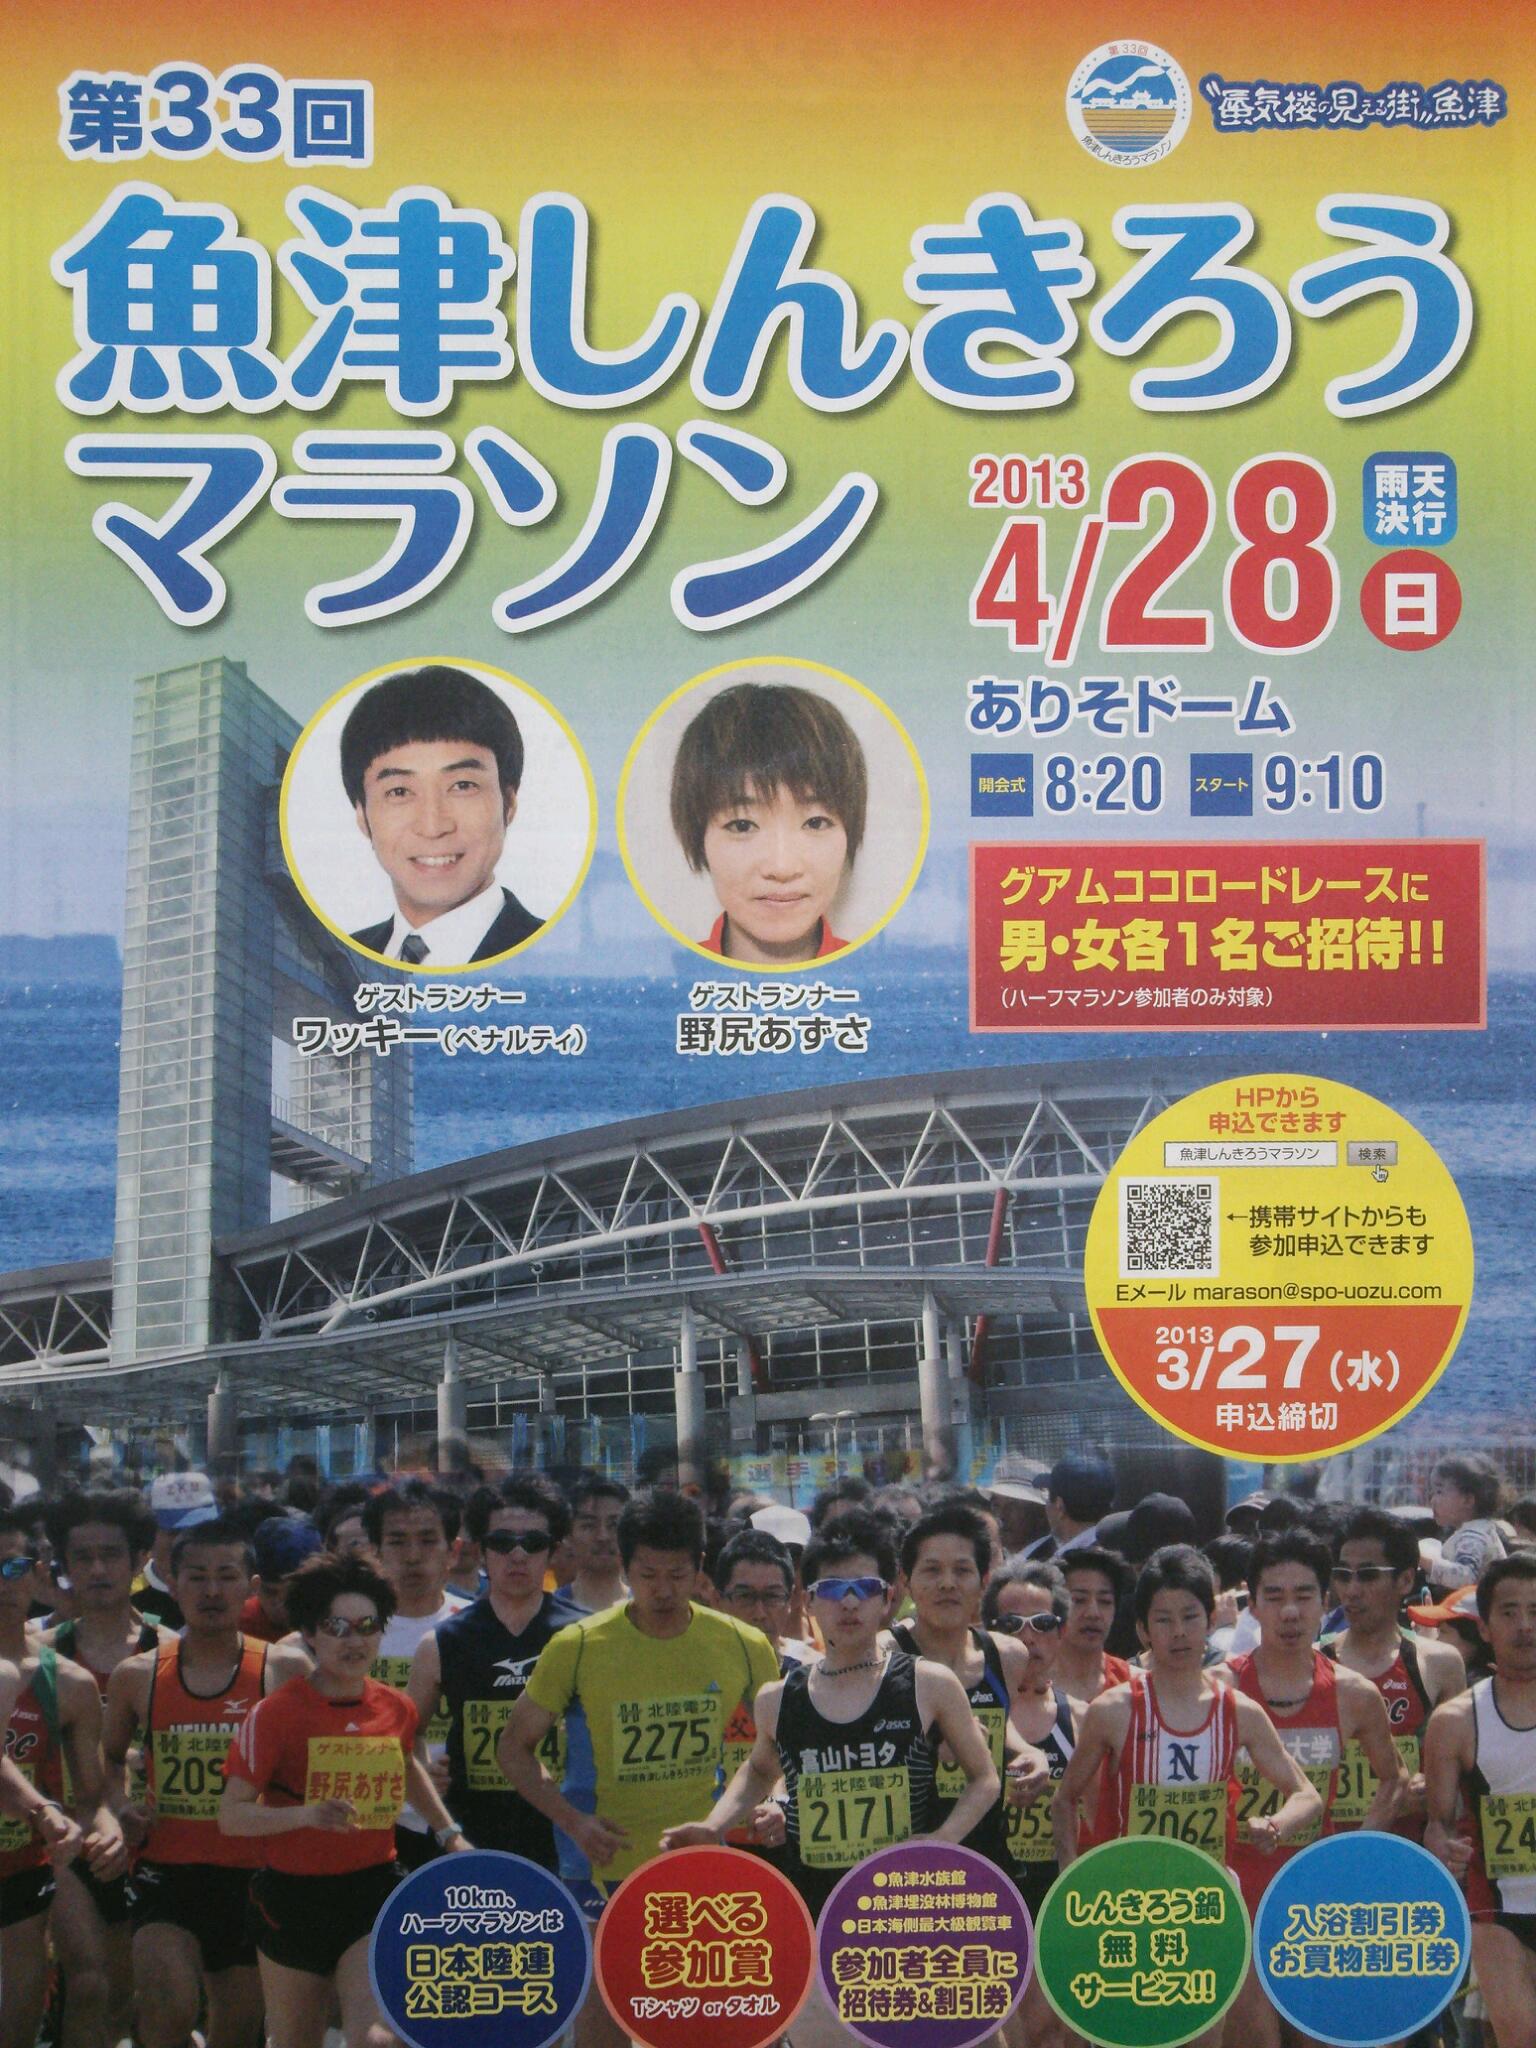 魚津しんきろうマラソン | 富山トヨタ社長室ブログ